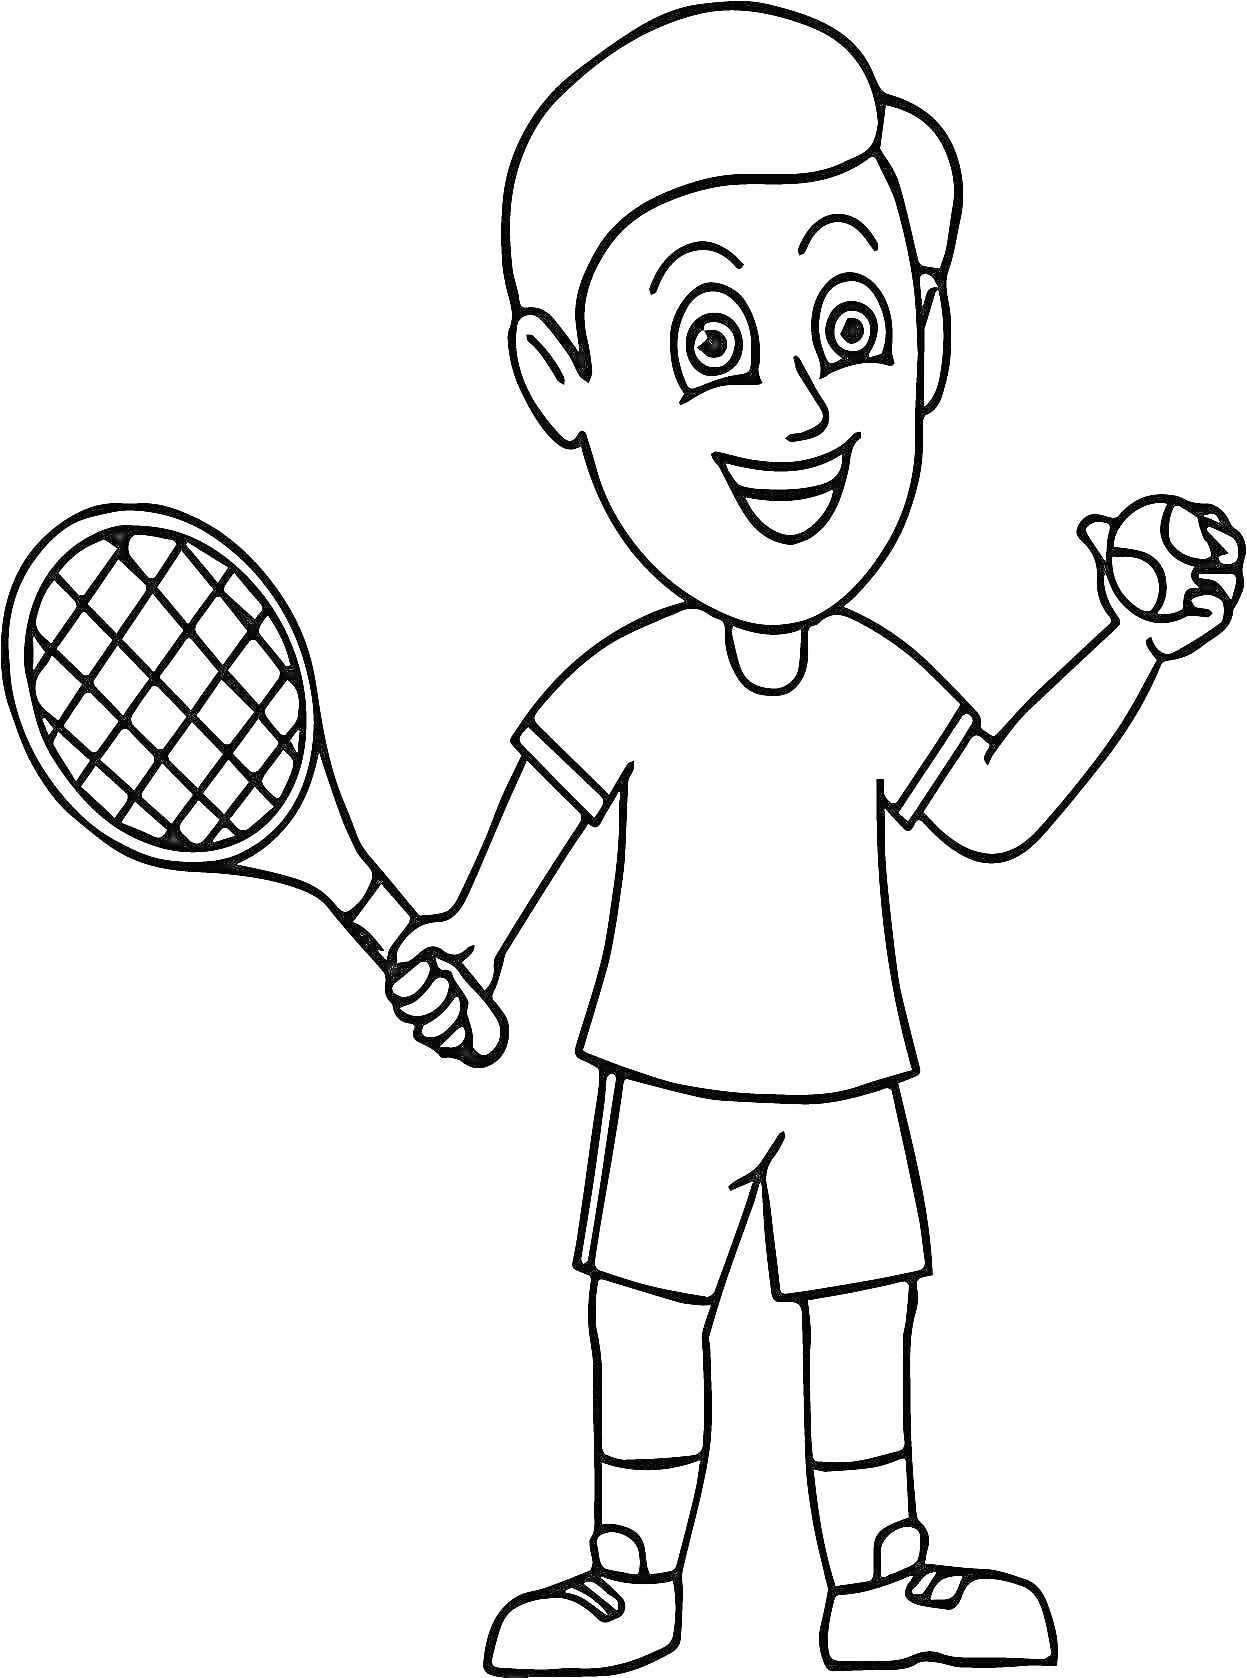 Раскраска Мальчик, держащий теннисную ракетку и теннисный мяч.